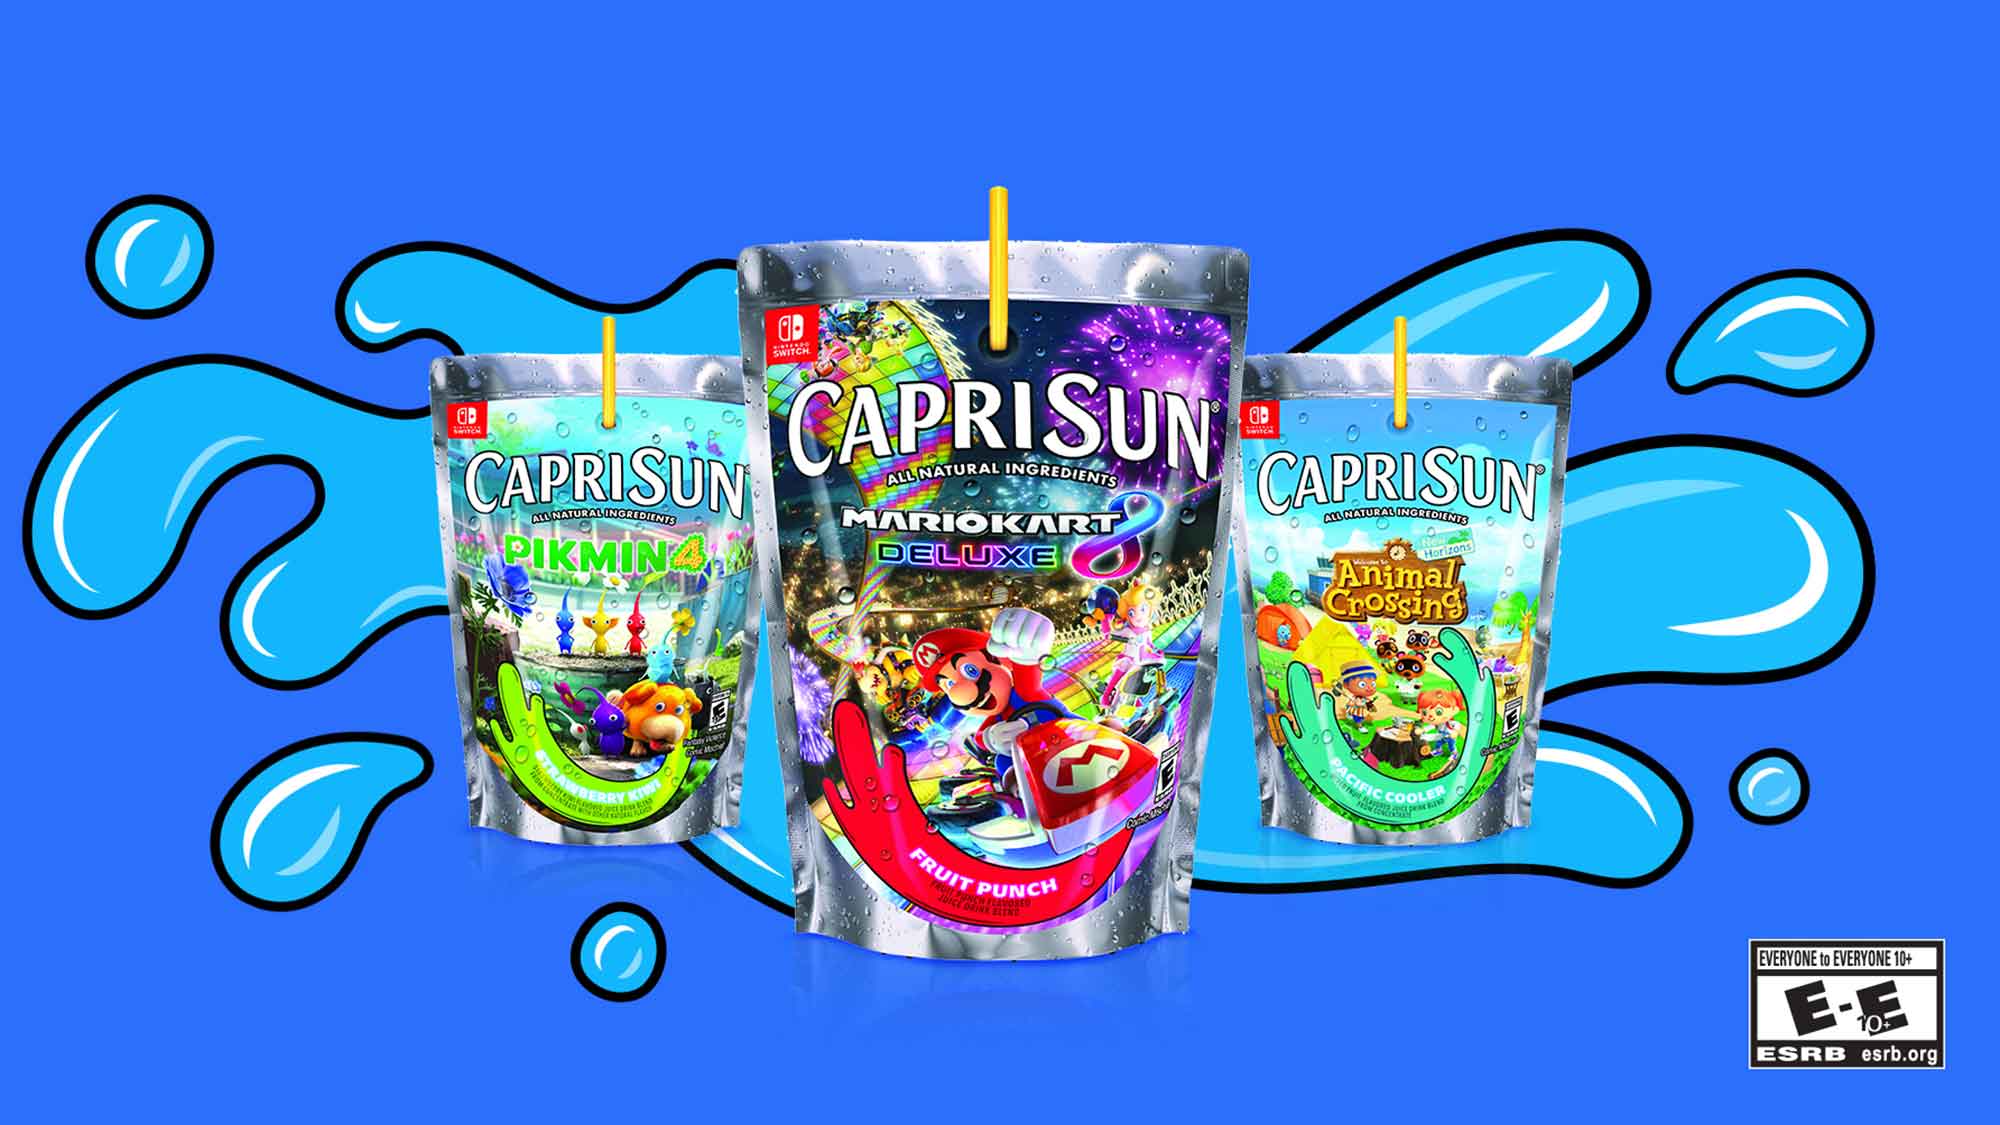 Capri Sun and Nintendo Invite Fans to “Slurp and Win” This Winter